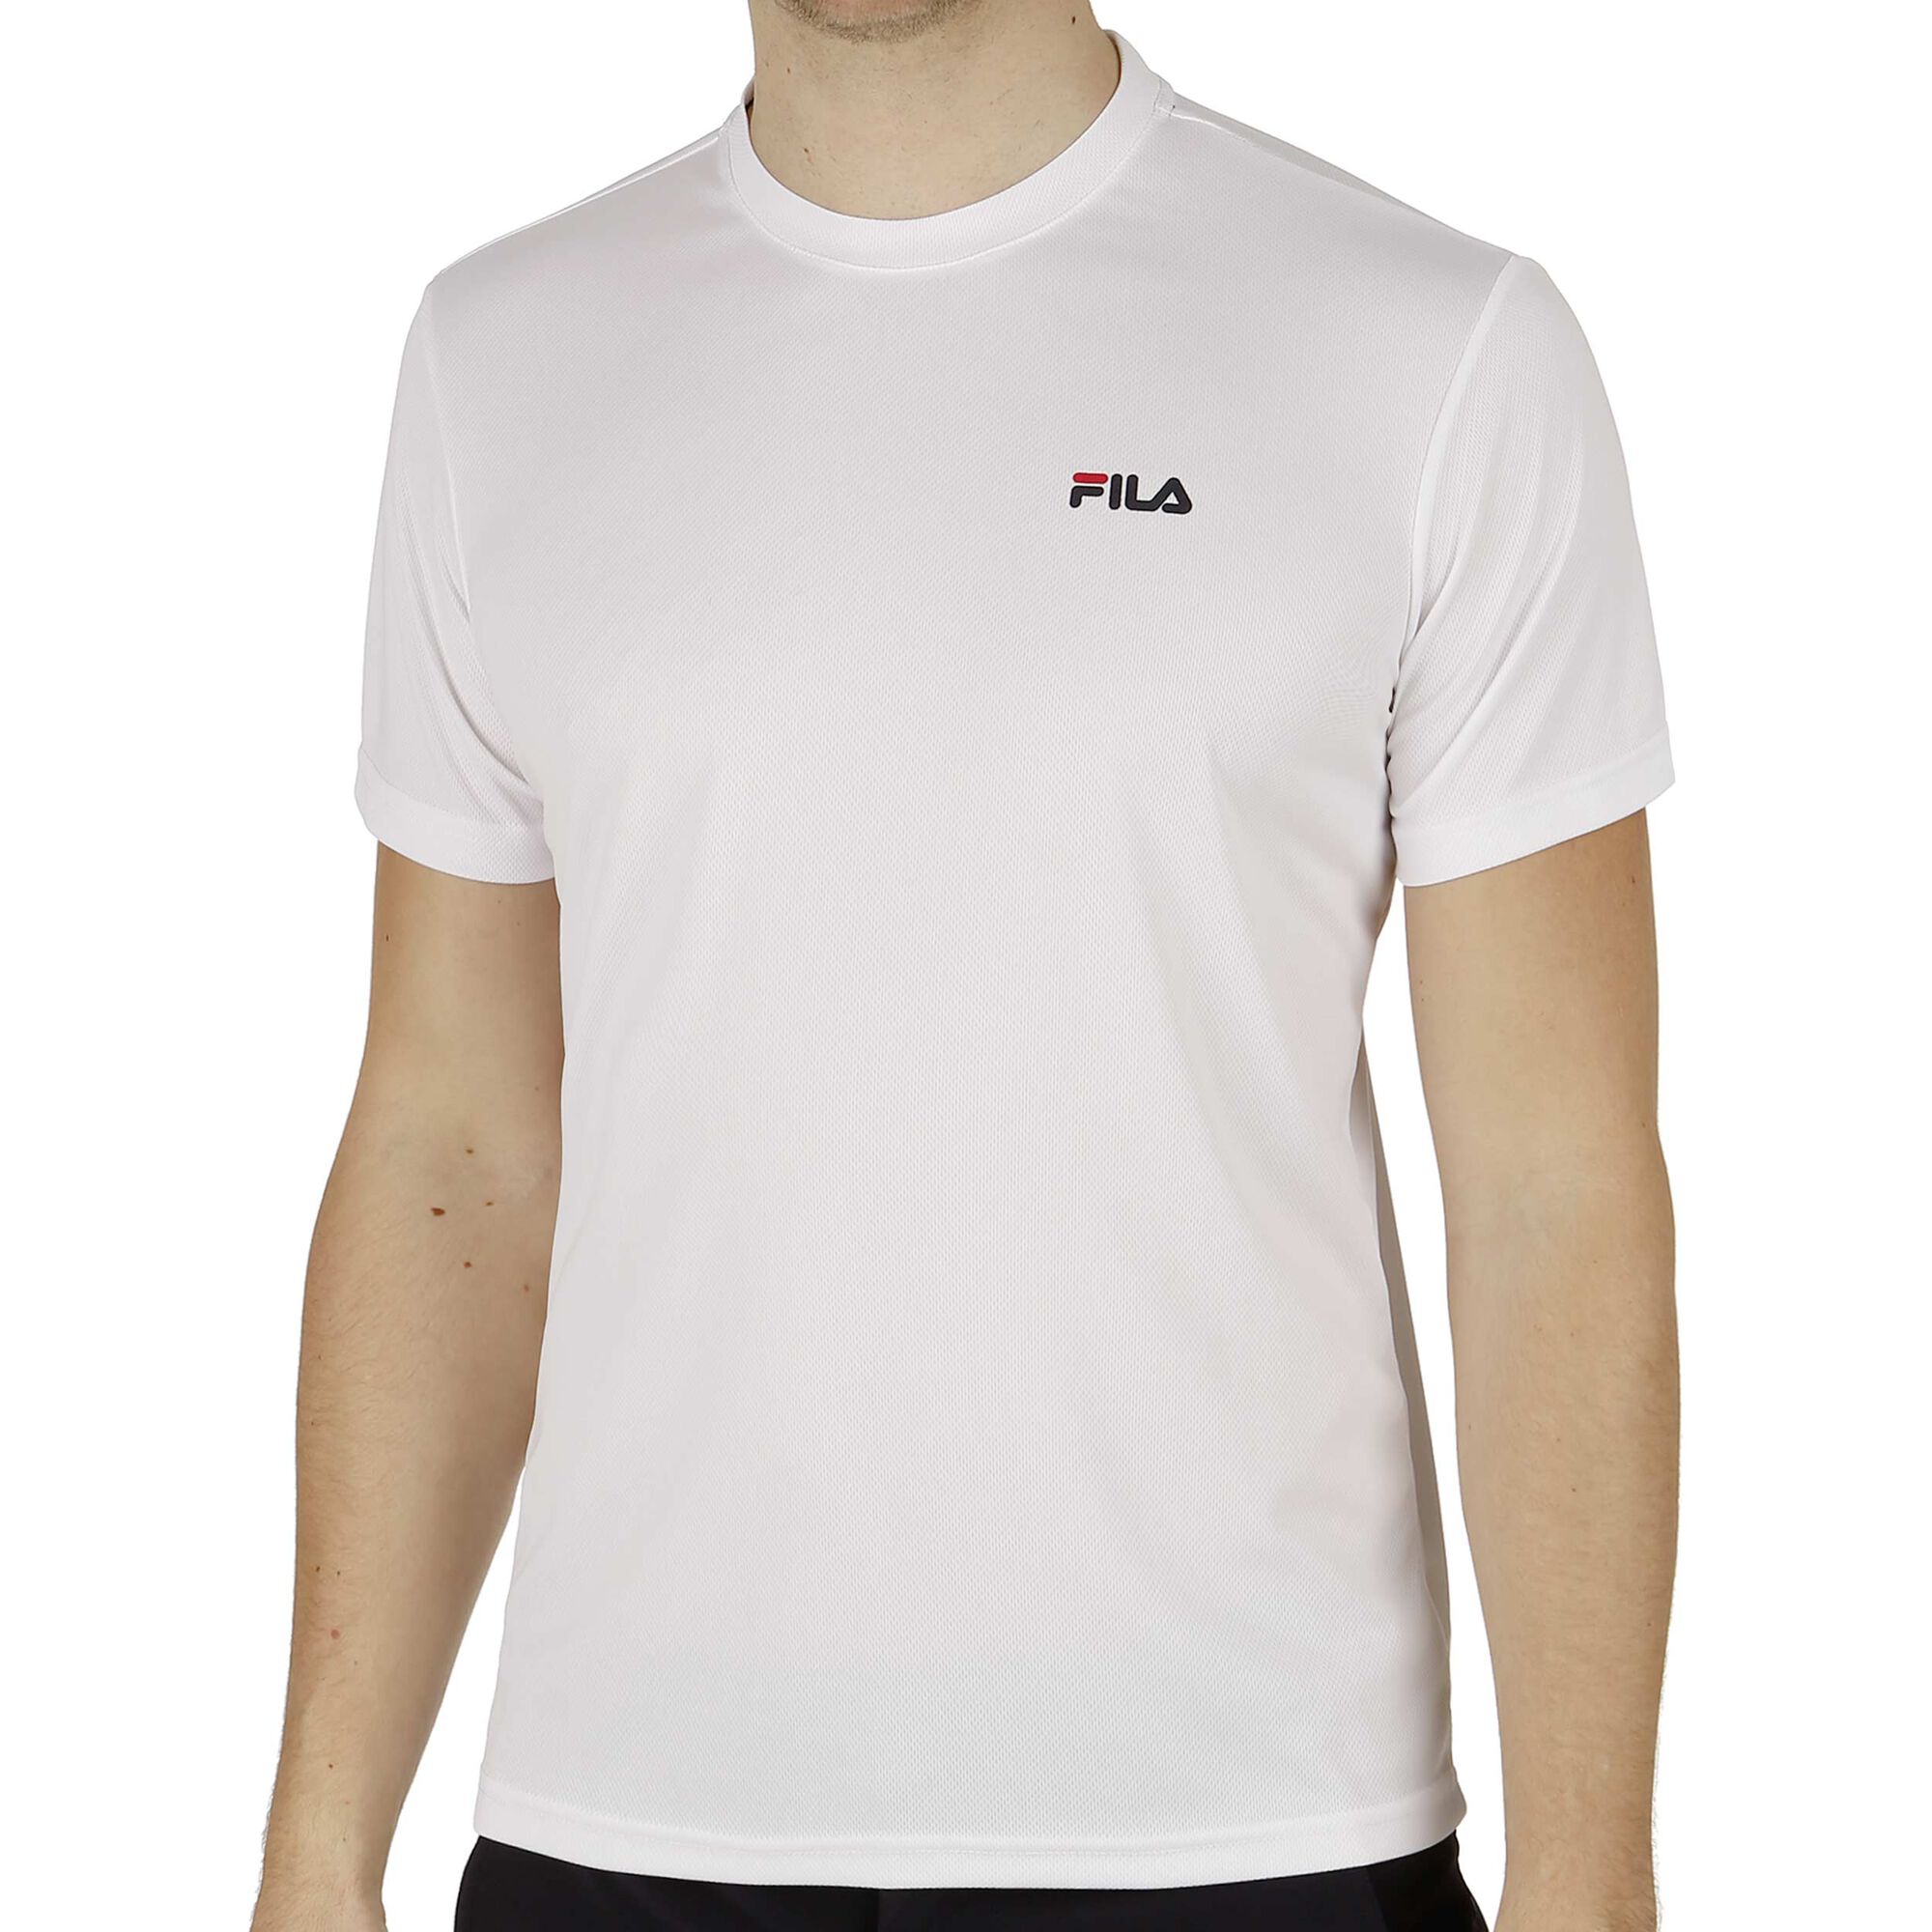 Betsy Trotwood oppakken Veroveren buy Fila Small Logo T-Shirt Men - White online | Tennis-Point